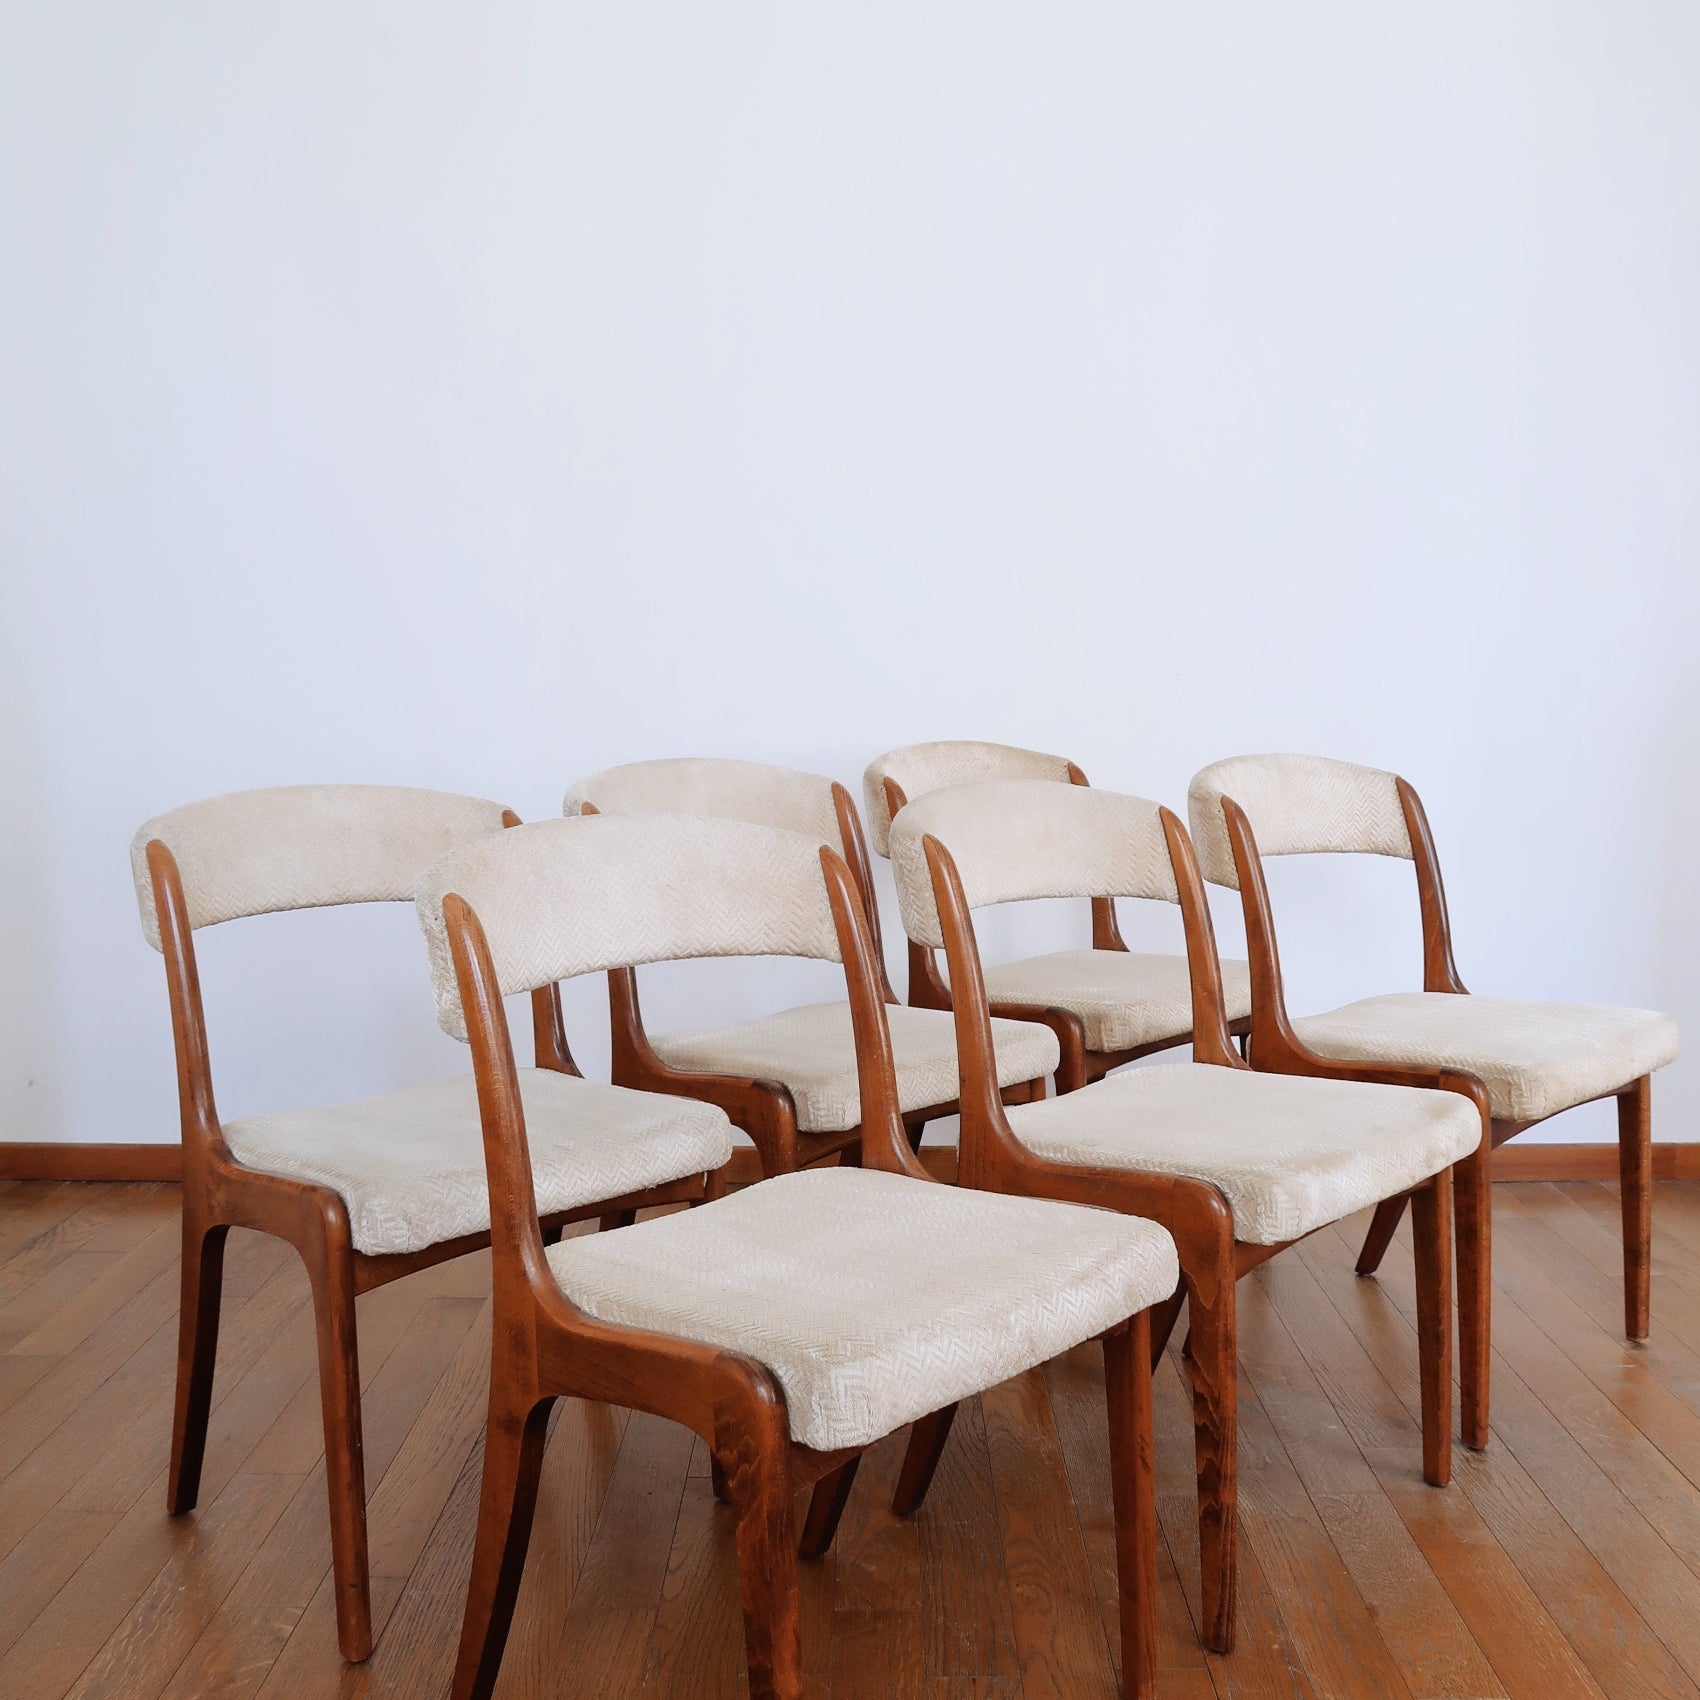 6 chaises baumann teck bois palissandre chêne gondole tweed clair beige vintage scandinave pieds fuselés compas traineau